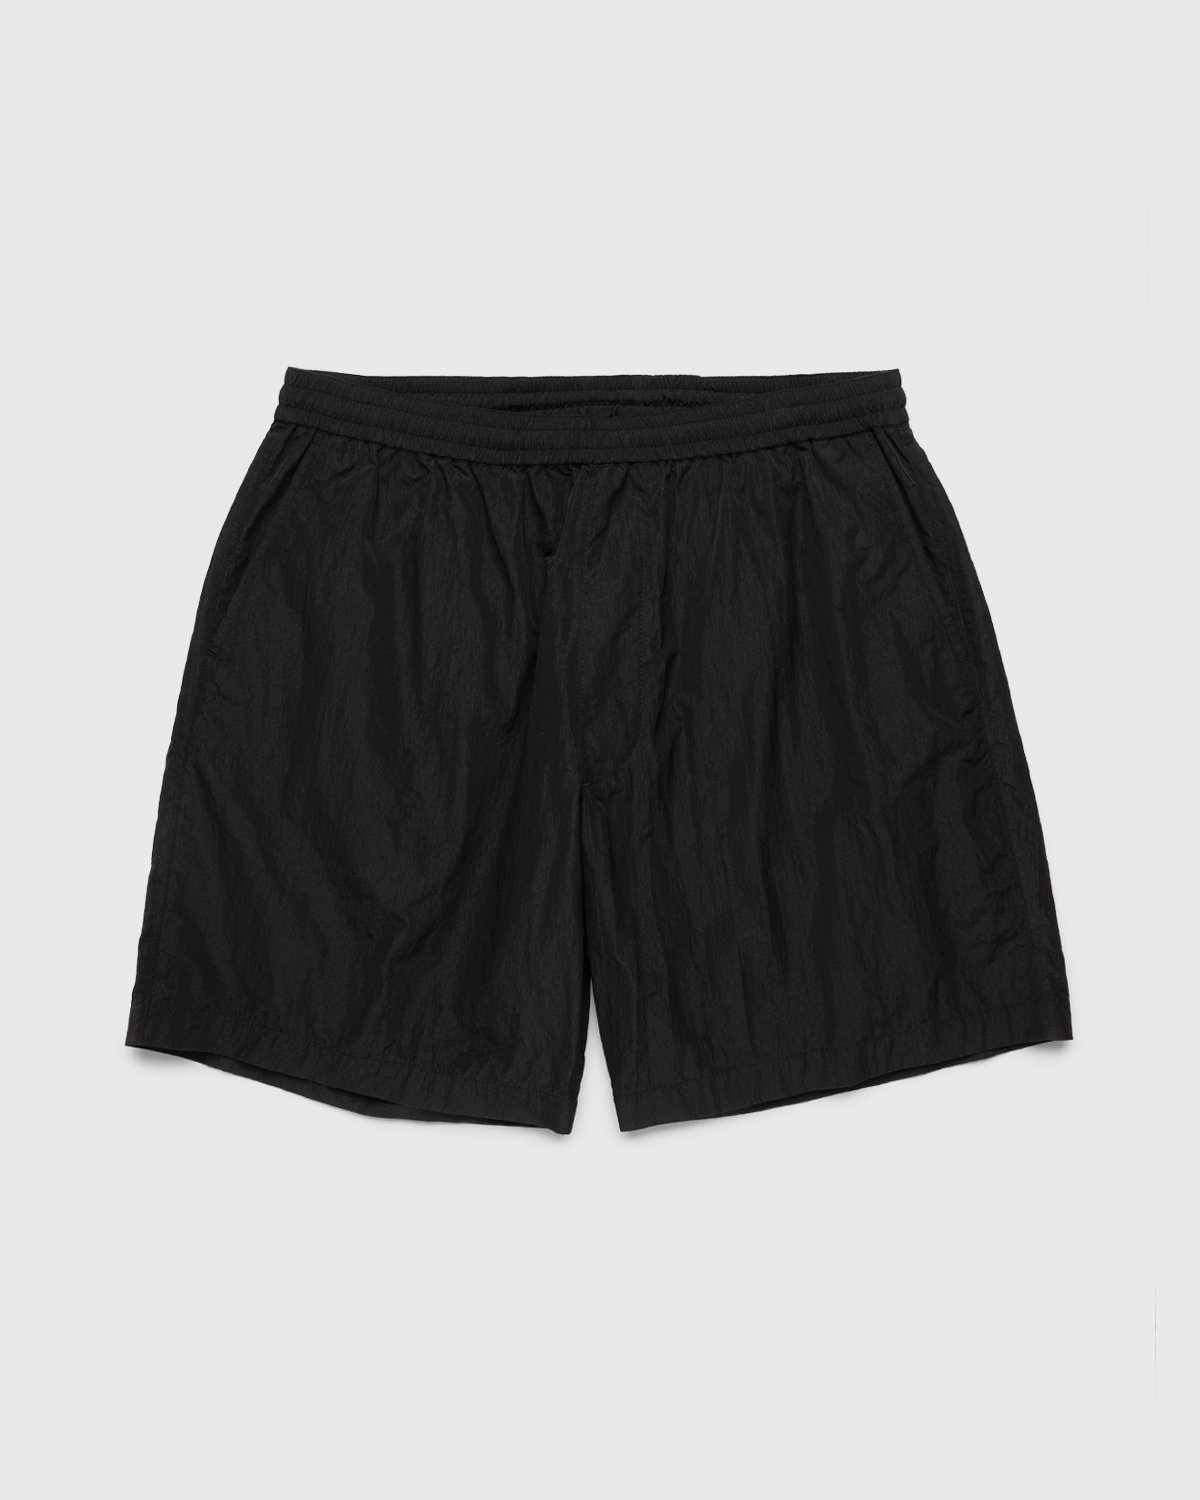 Highsnobiety - Crepe Nylon Shorts Black - Clothing - Black - Image 1